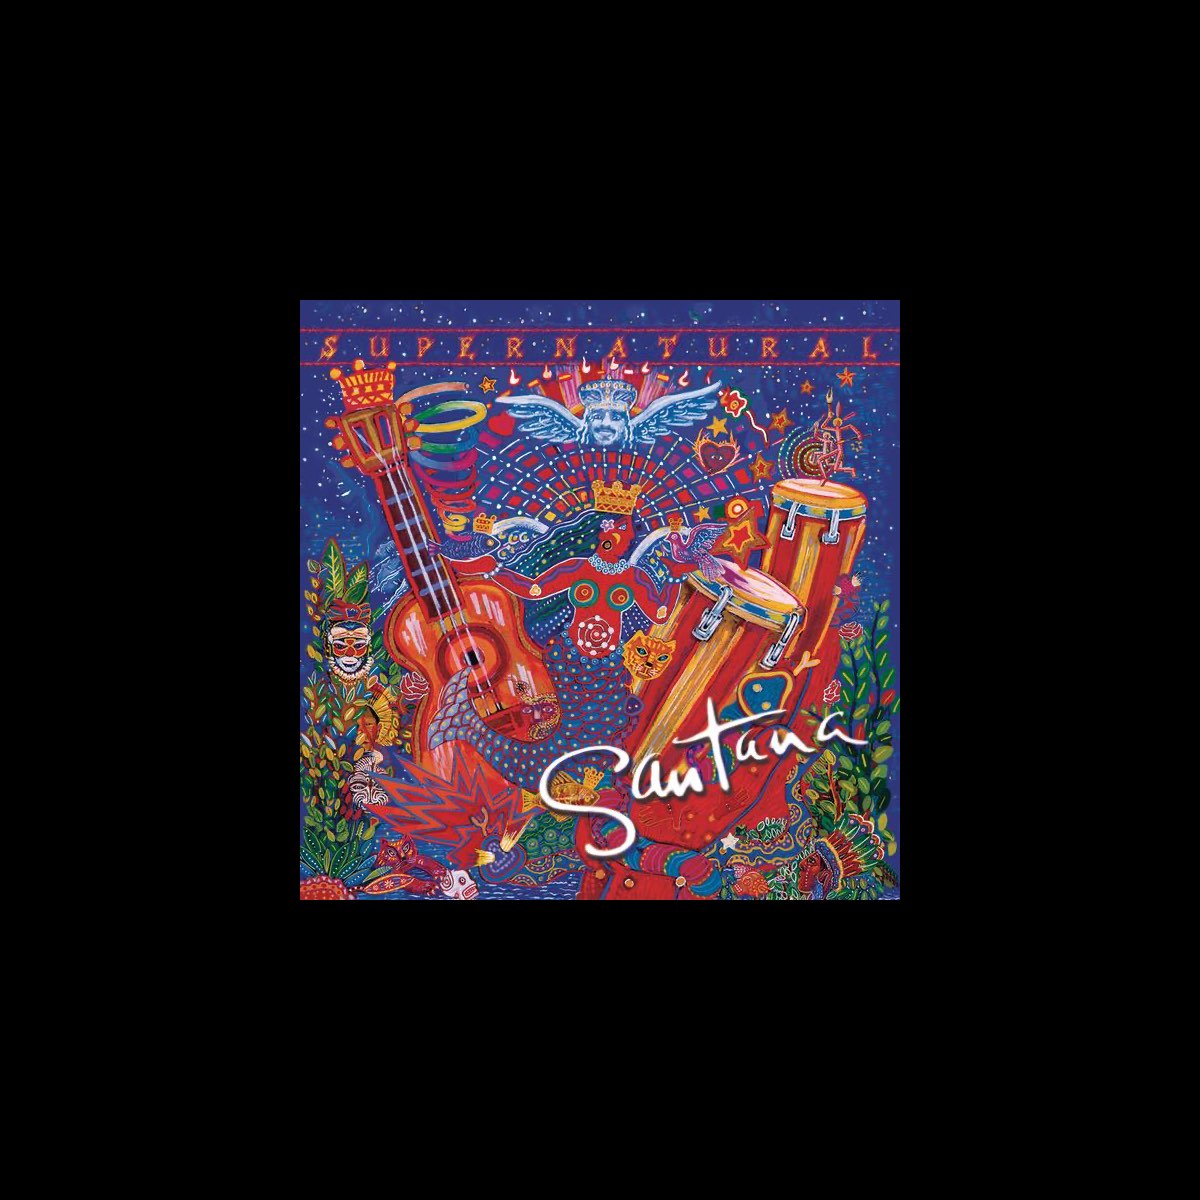 Supernatural (Remastered) [Bonus Track Version] by Santana on Apple Music